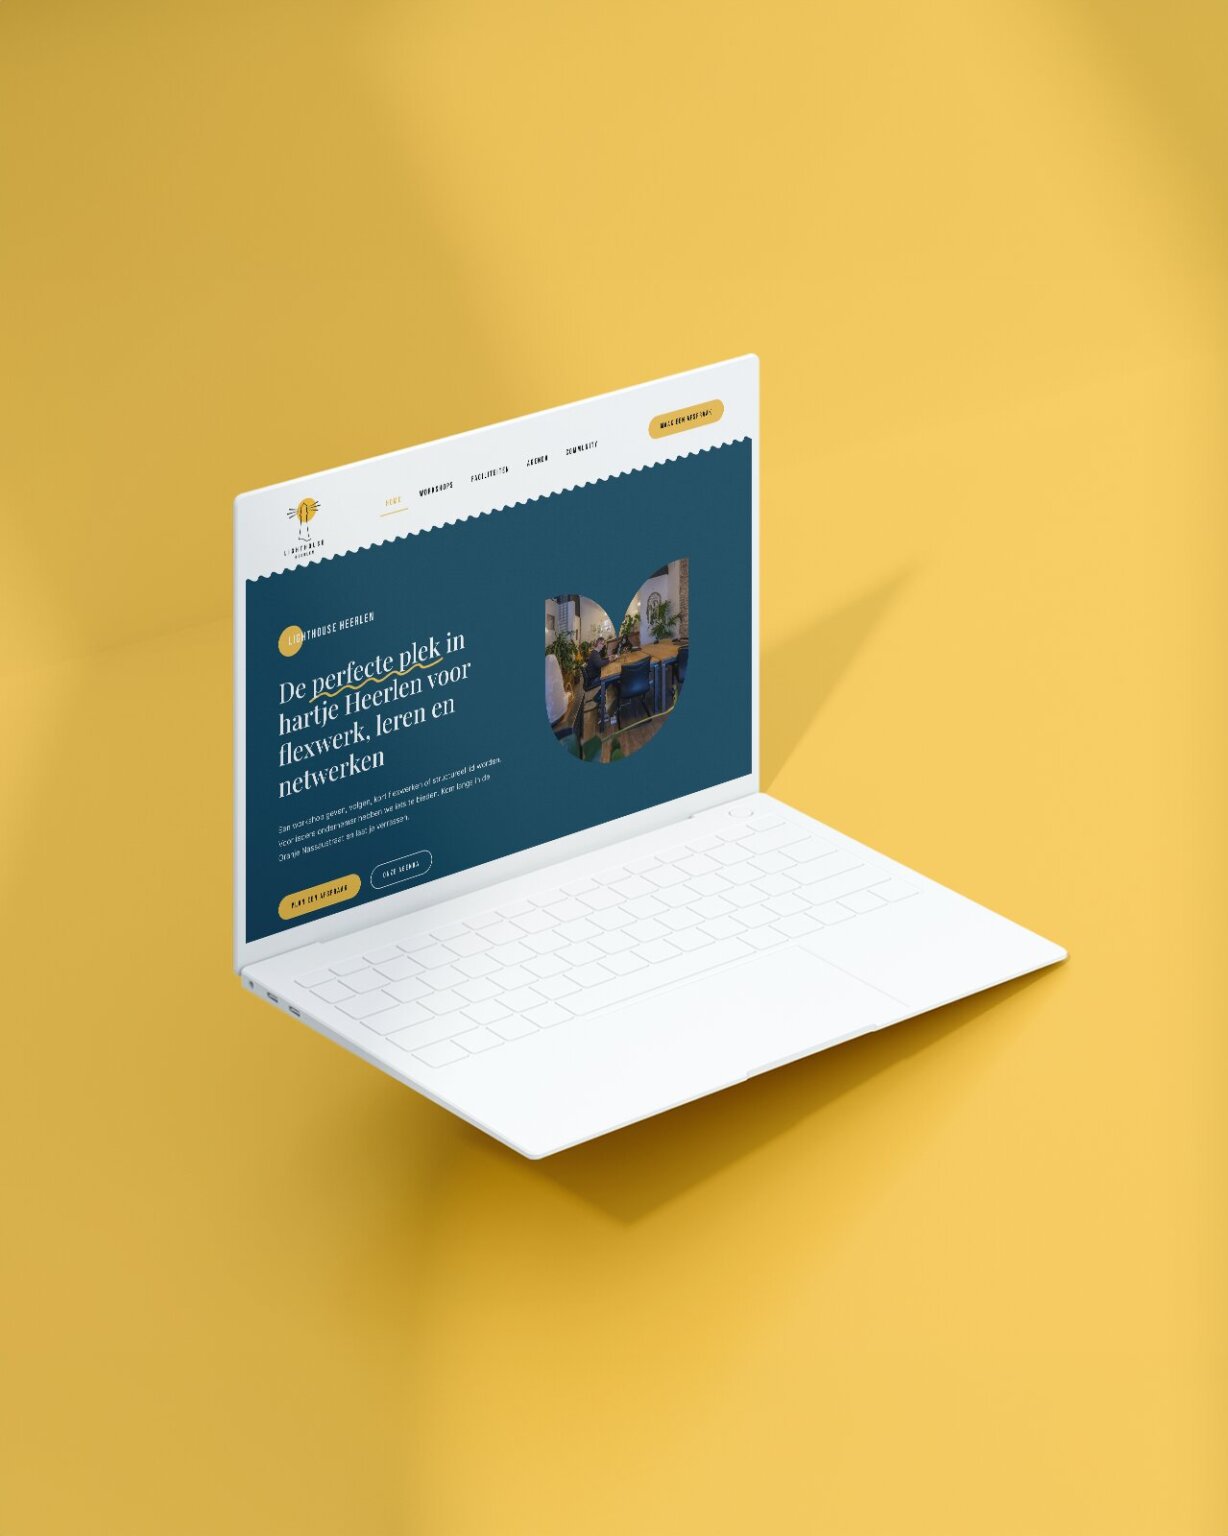 Witte laptop met een gele achtergrond met daarop een Nederlandse website met tekst en een afbeelding van een gezellige binnenruimte, verwijzend naar toekomstige trends in interieurdesign in Brunssum.